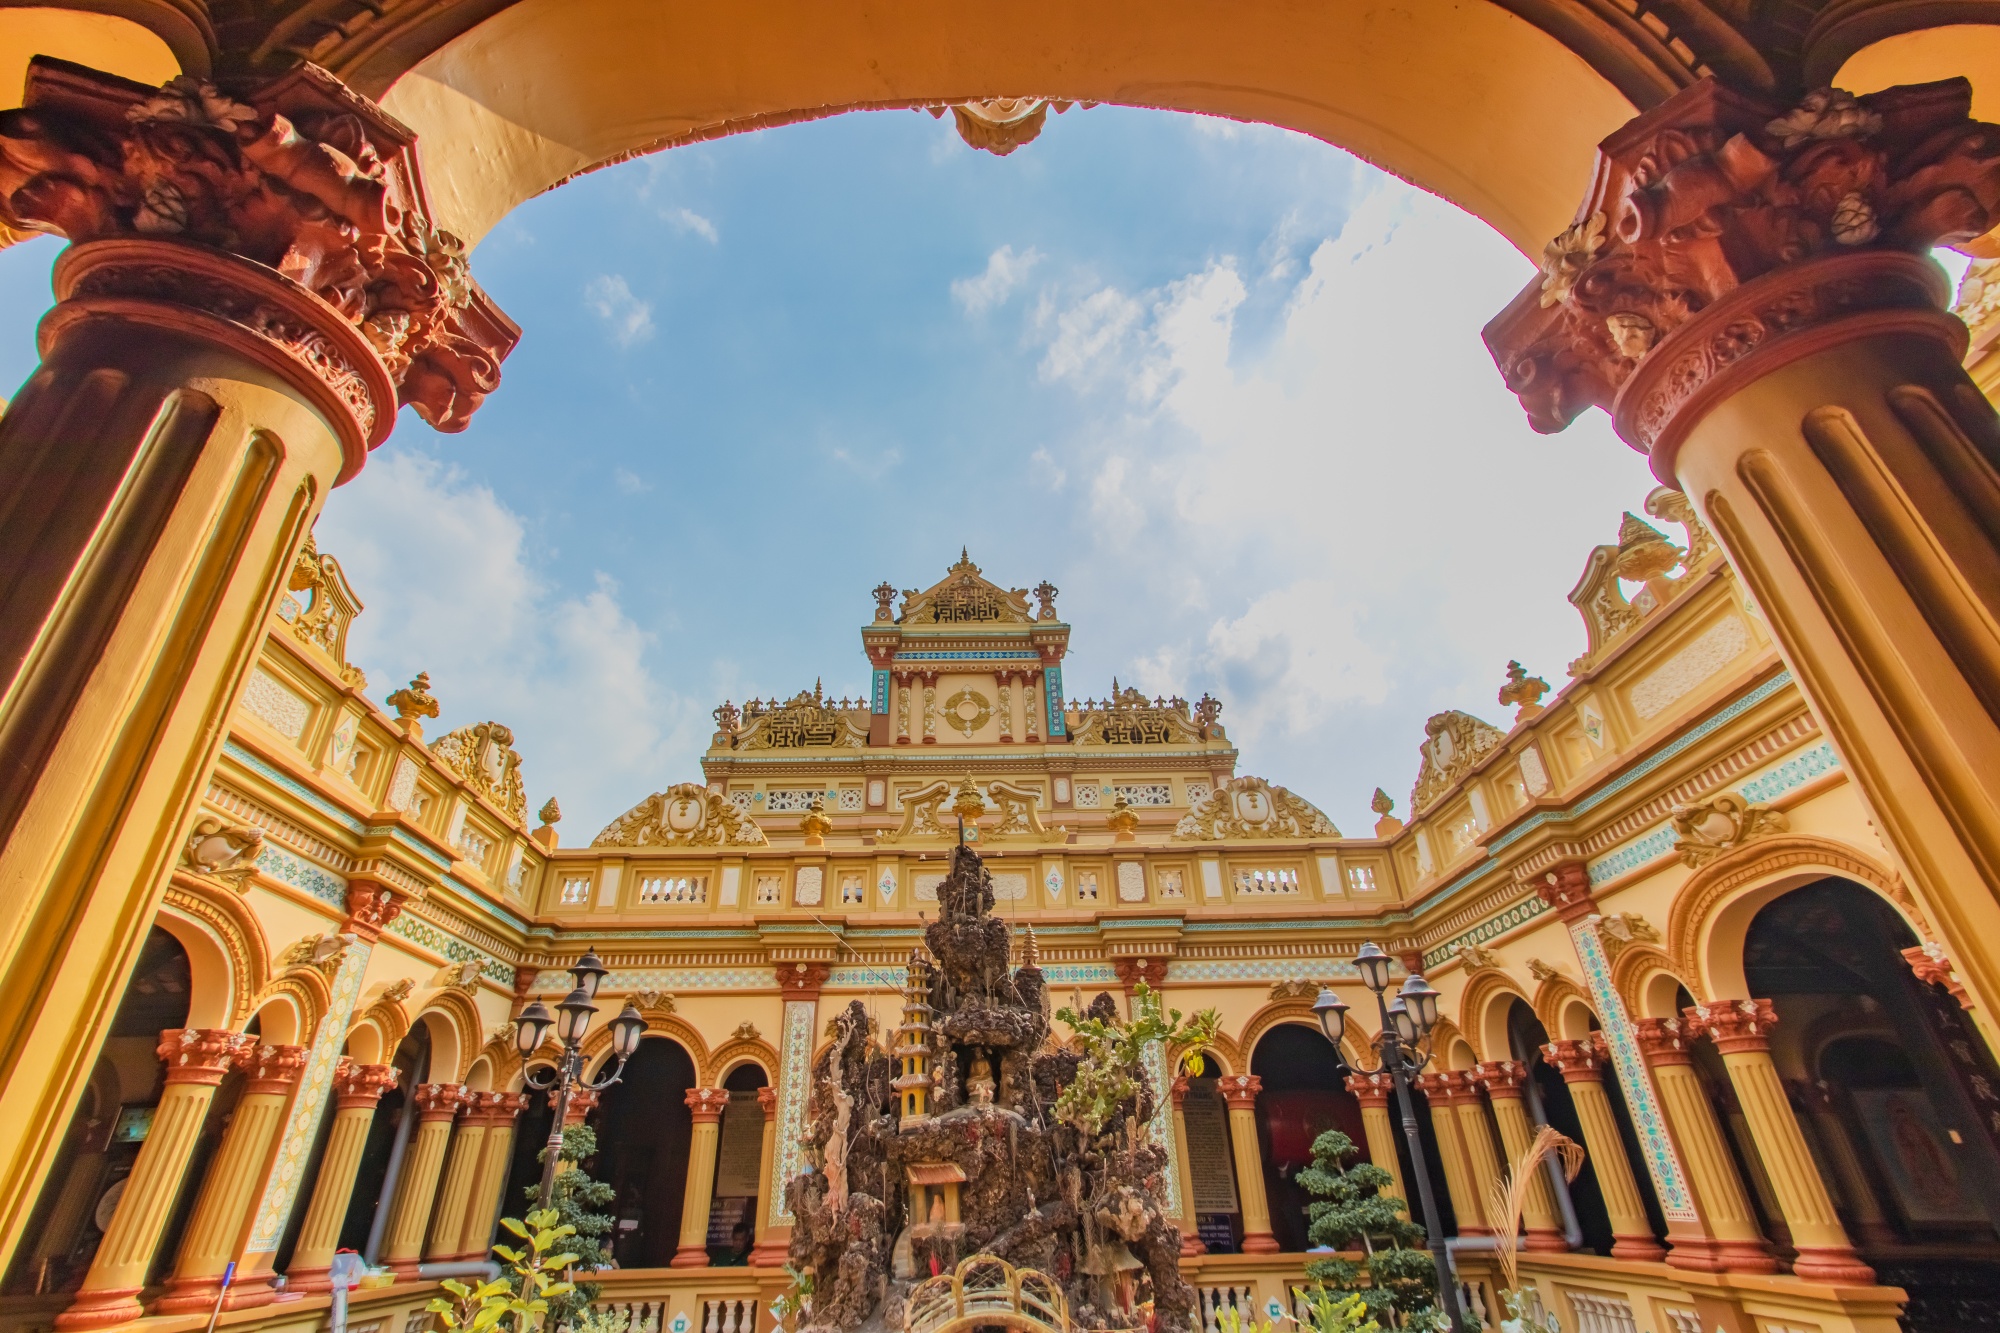 ヴィンチャン寺院（永長寺）は、1849年に設立されたミトー郊外にある仏教寺院。1907年には、宗主国であったフランスの影響を受けて現在の姿に改築された。コロニアル調の華やかな装飾が彫刻やタイルなどに施されていて、前庭は、まるでヨーロッパの宮殿のような雰囲気を醸し出している。